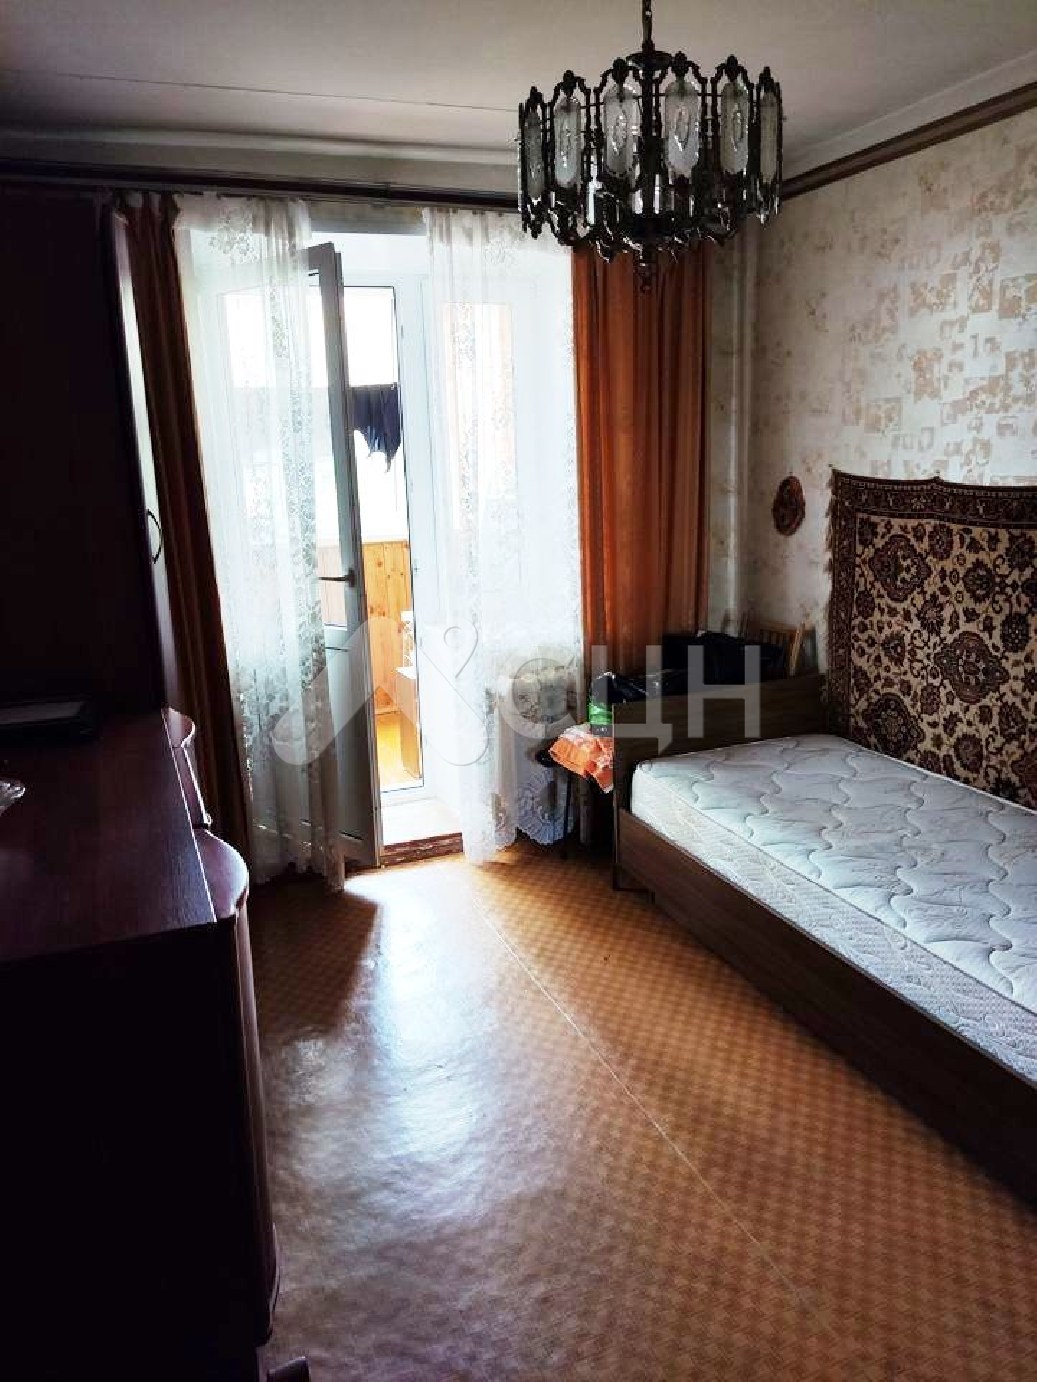 авито саров квартиры
: Г. Саров, улица Некрасова, 11, 3-комн квартира, этаж 2 из 9, продажа.